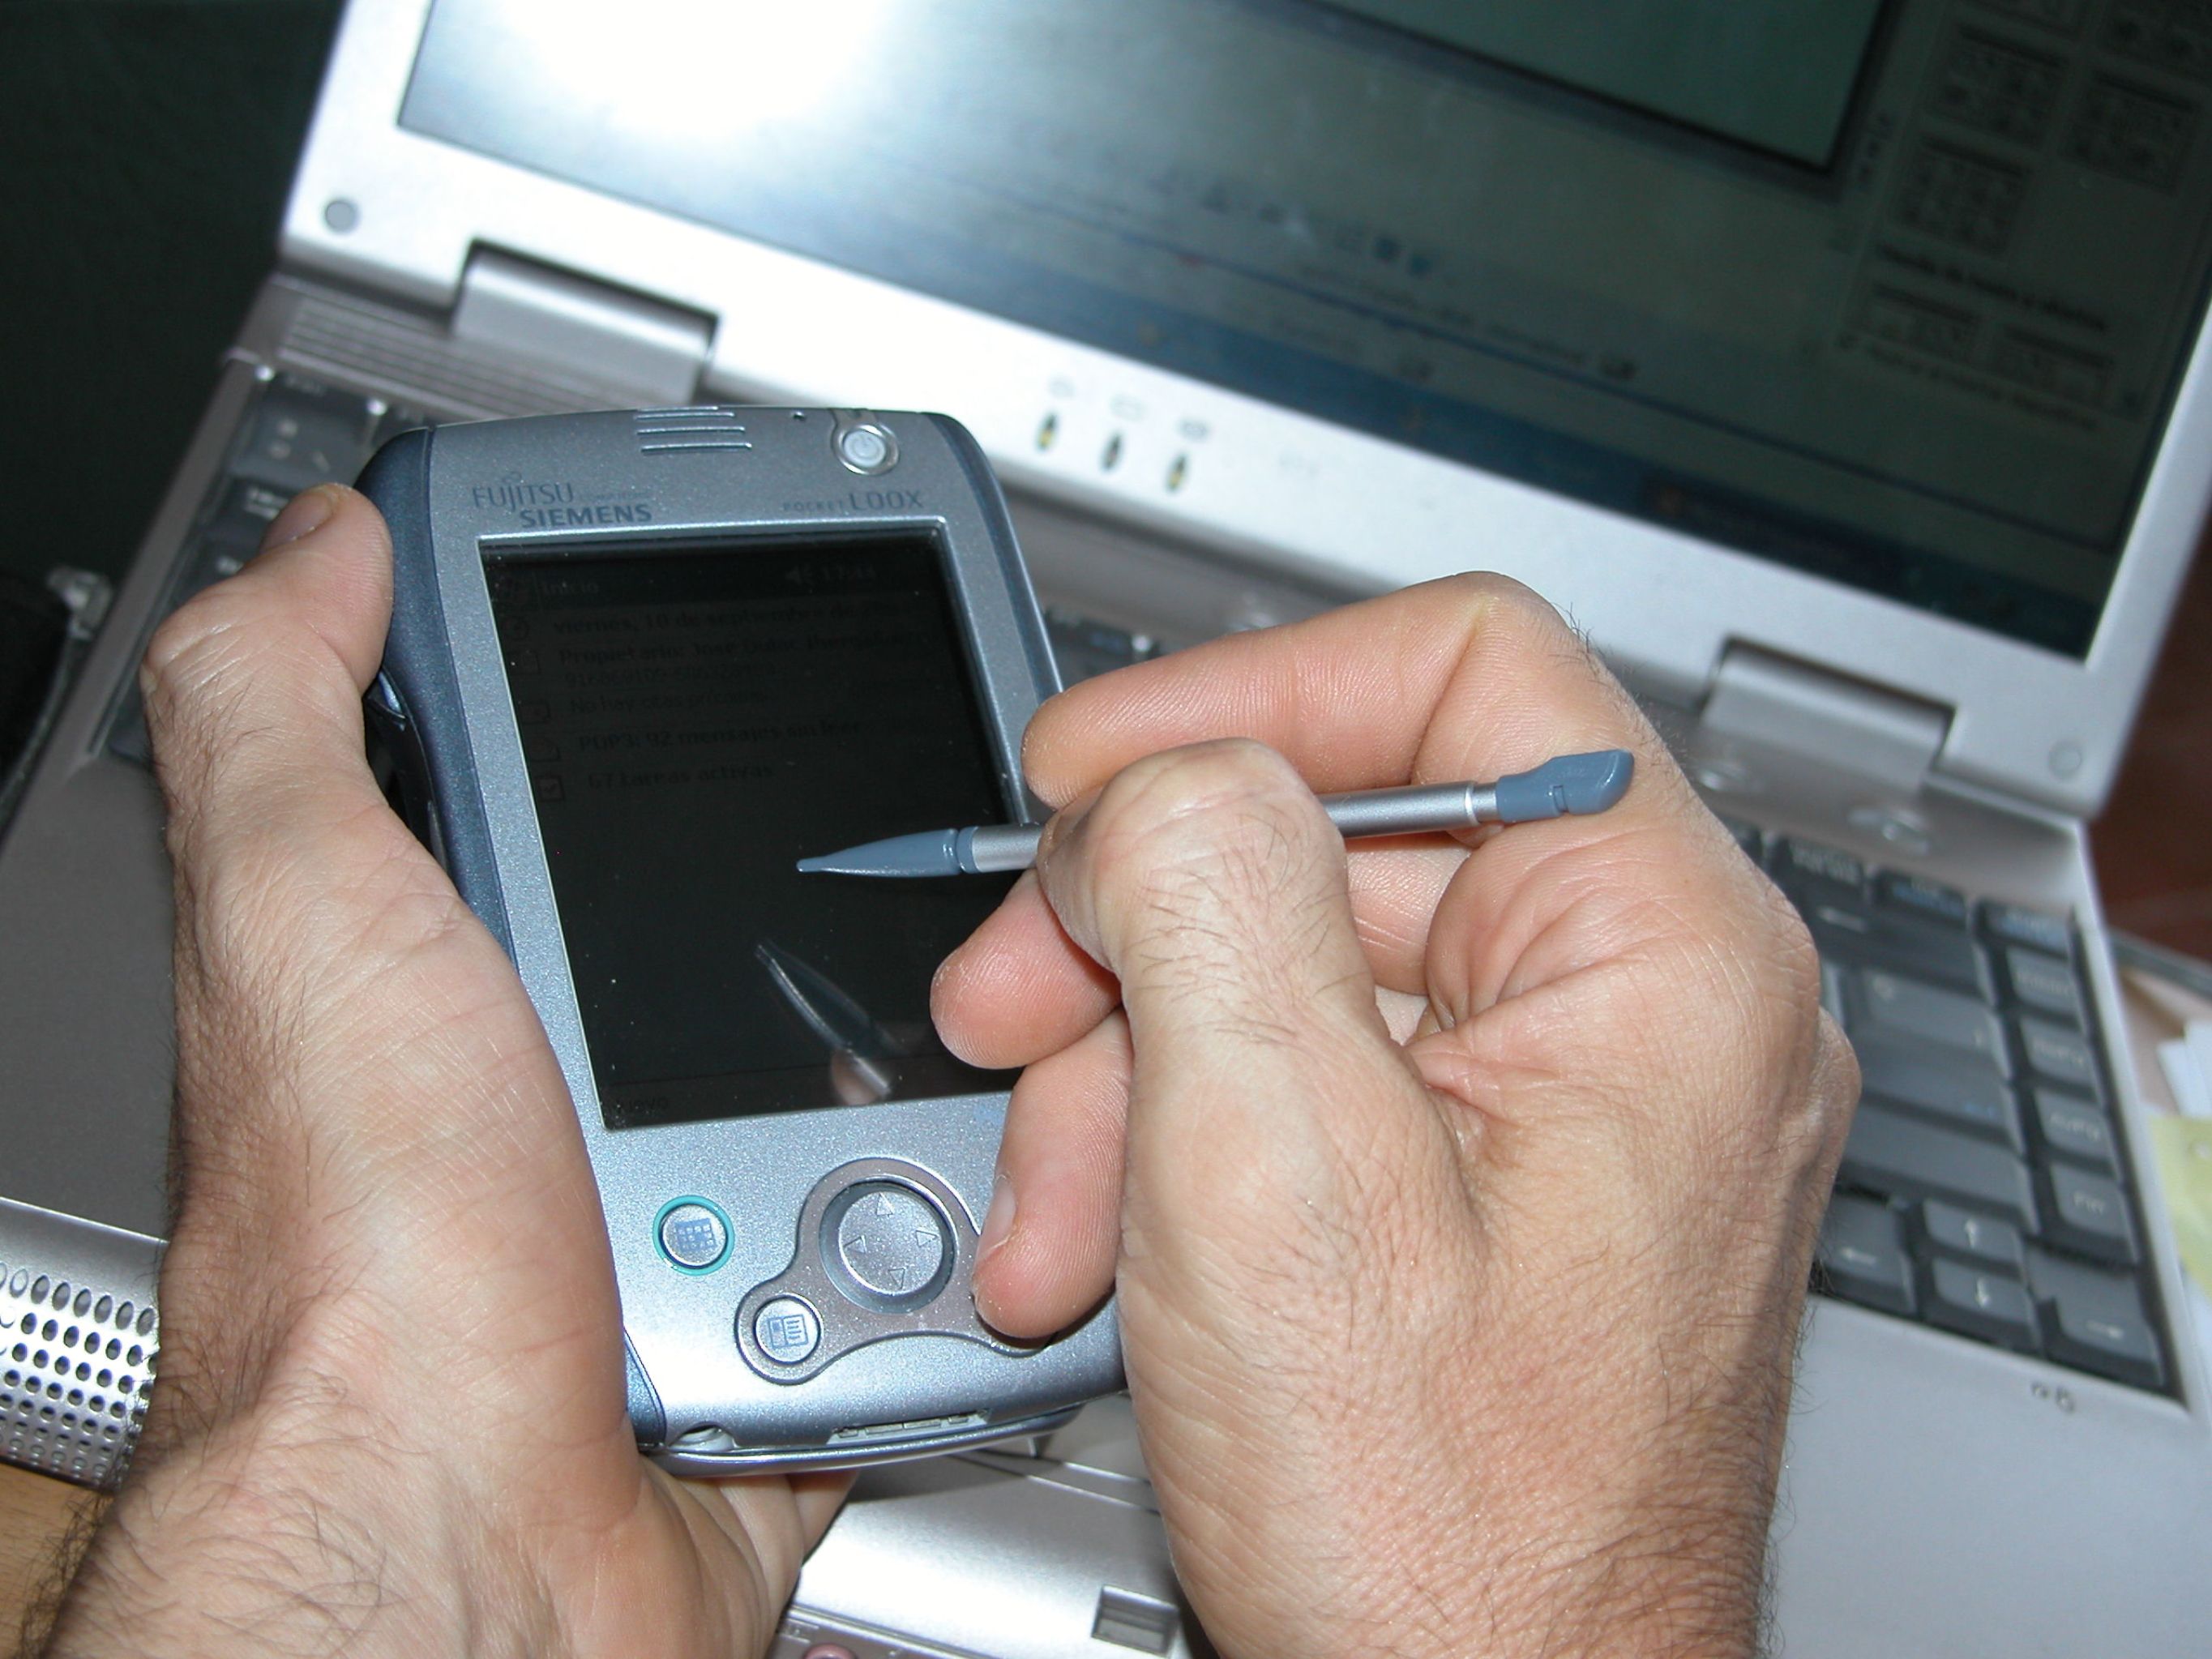 Alguien sostiene una PDA y escribe sobre ella con un lápiz digital. En el fondo aparece un portátil.